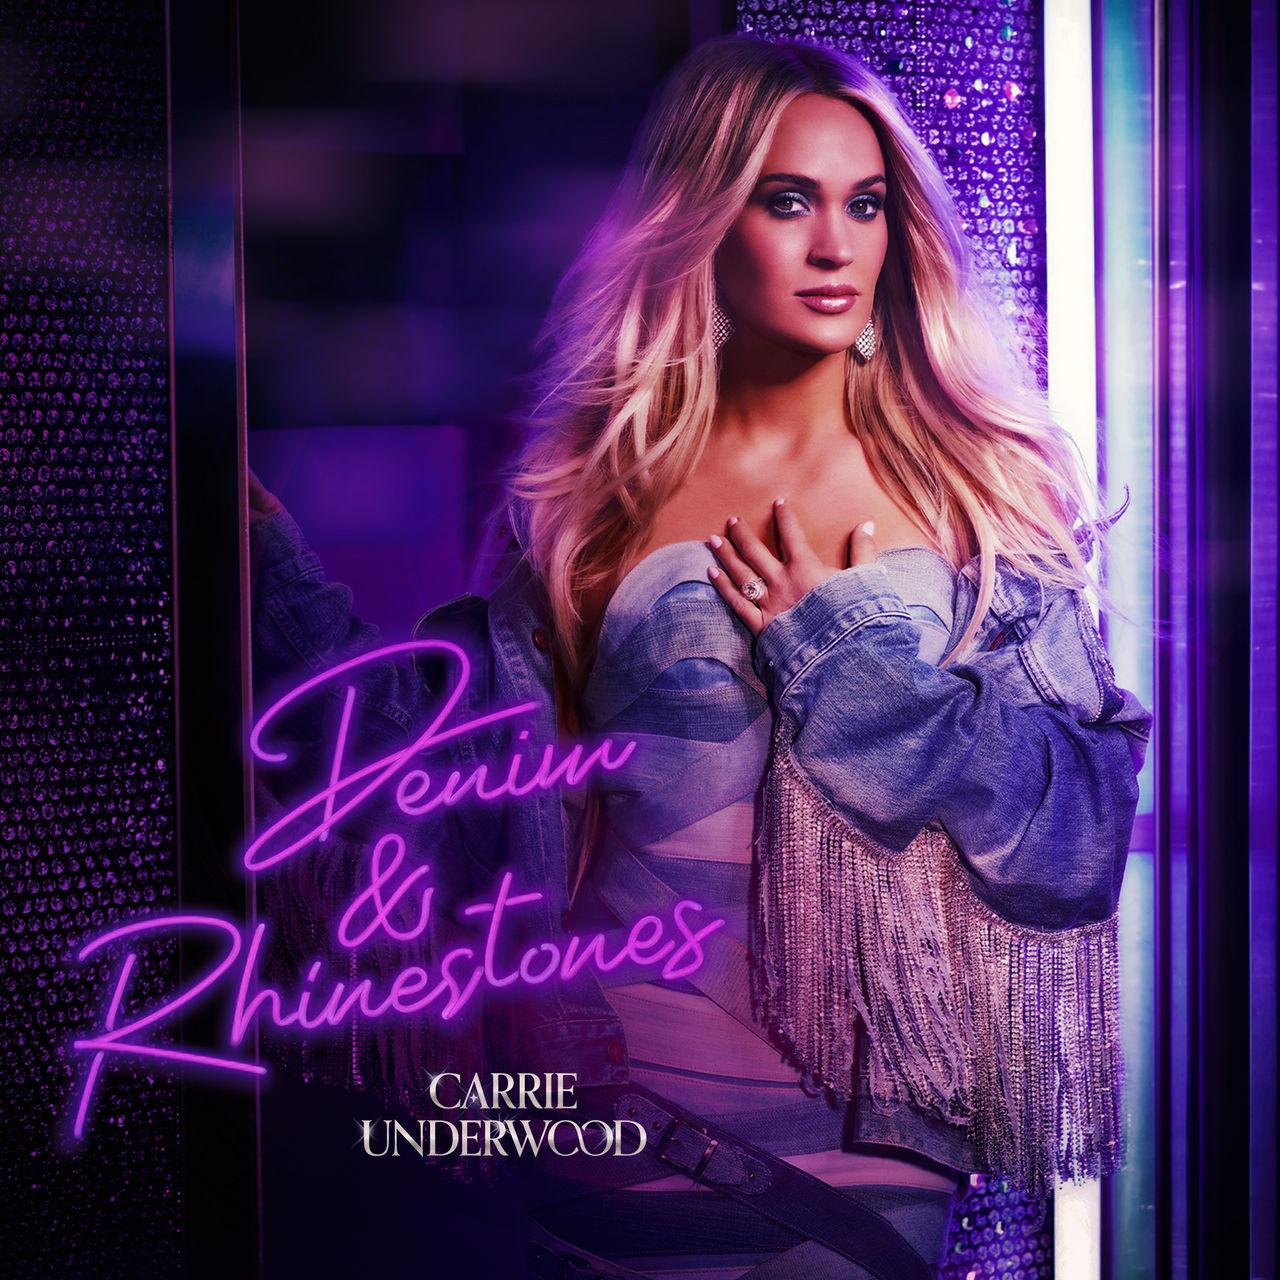 Carrie Underwood Denim and Rhinestones by KallumLavigne on DeviantArt